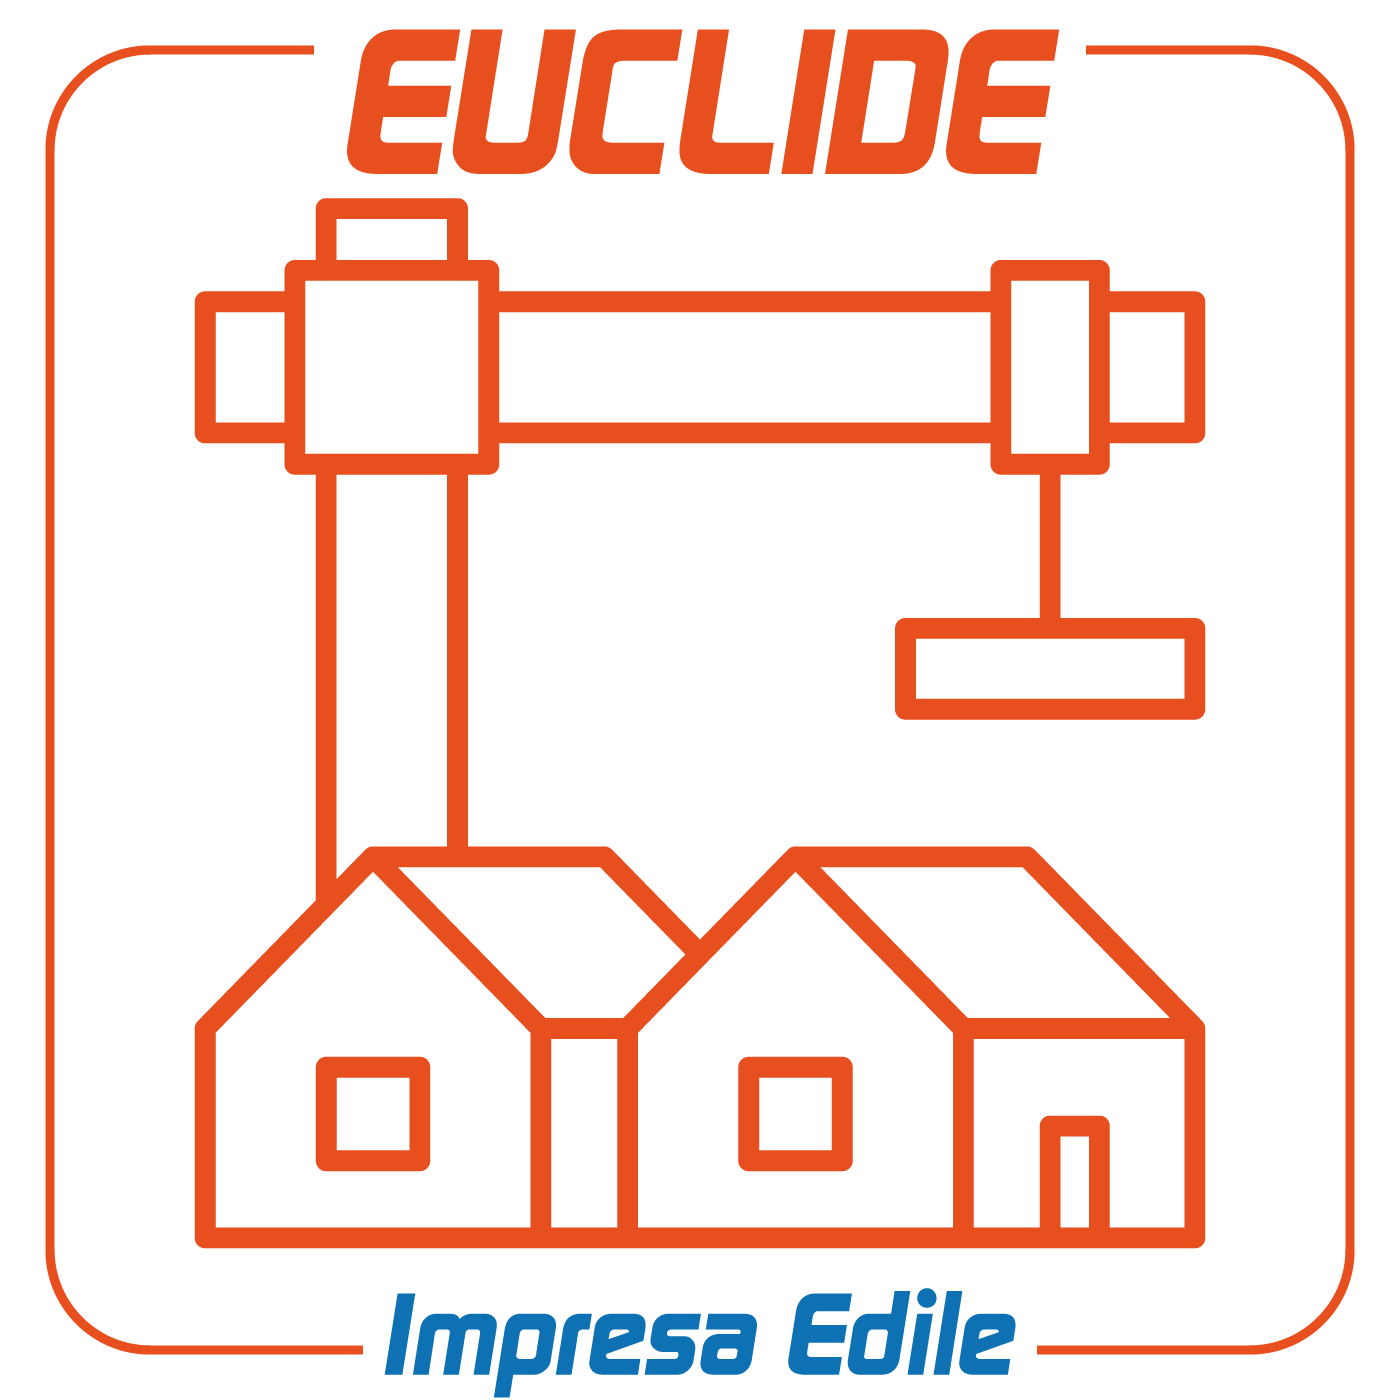 Euclide Impresa EdileSoftware per la gestione di imprese edili ed impiantistiche (rilevazione costi di cantiere, gestione dei magazzini, contabilità non fiscale e fatturazione). Disponibile anche in versione client/server.